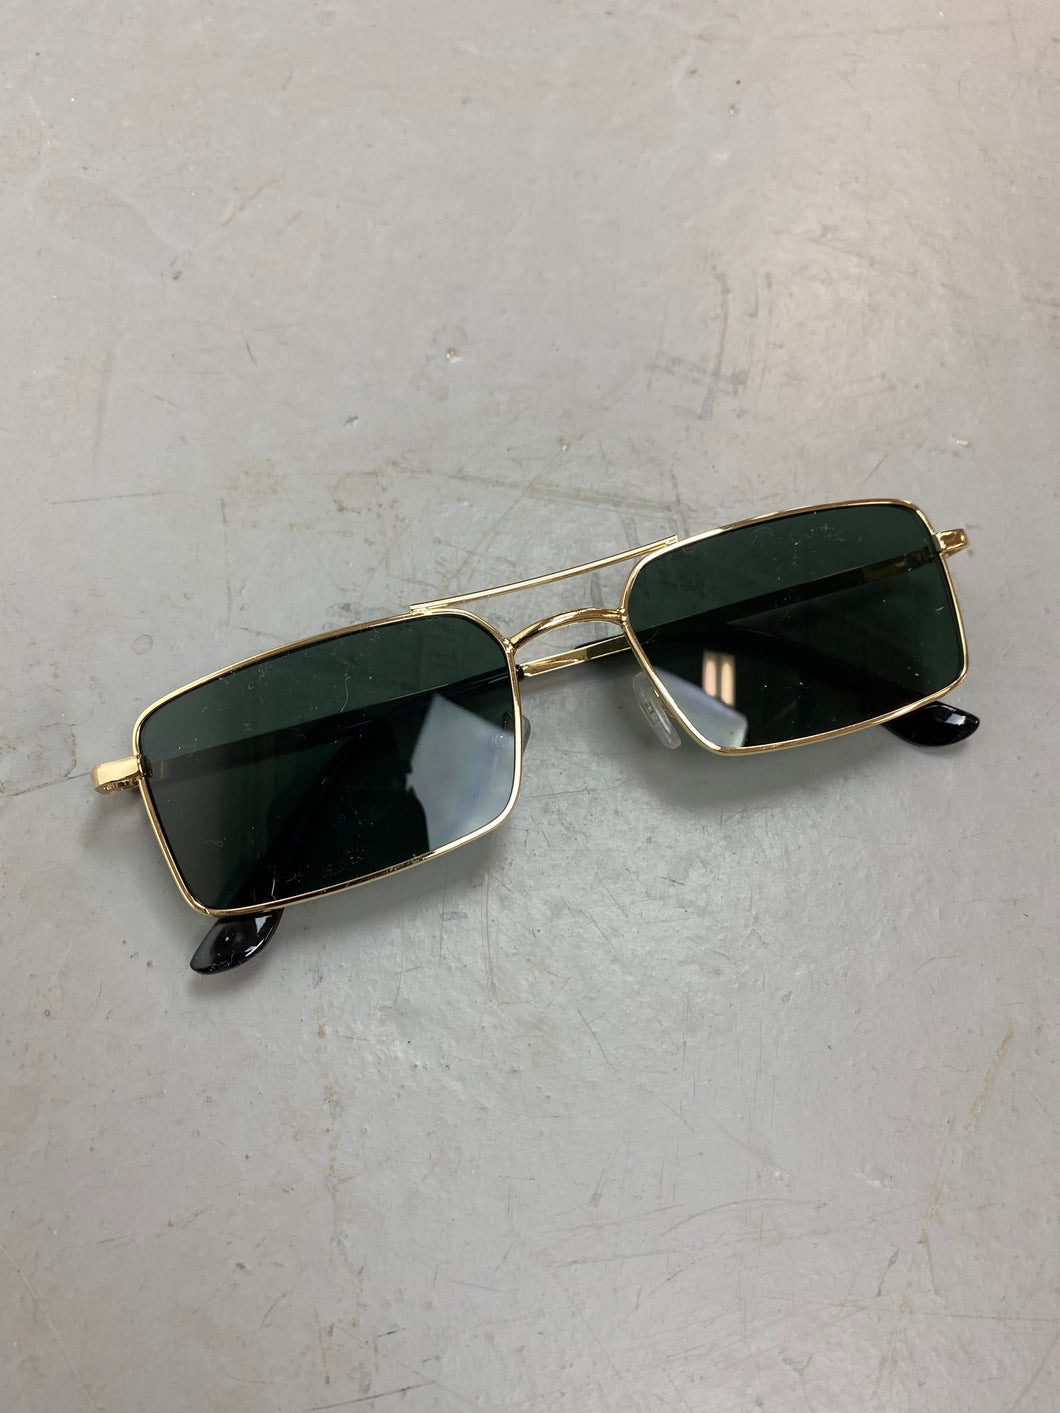 Gold metal framed glasses